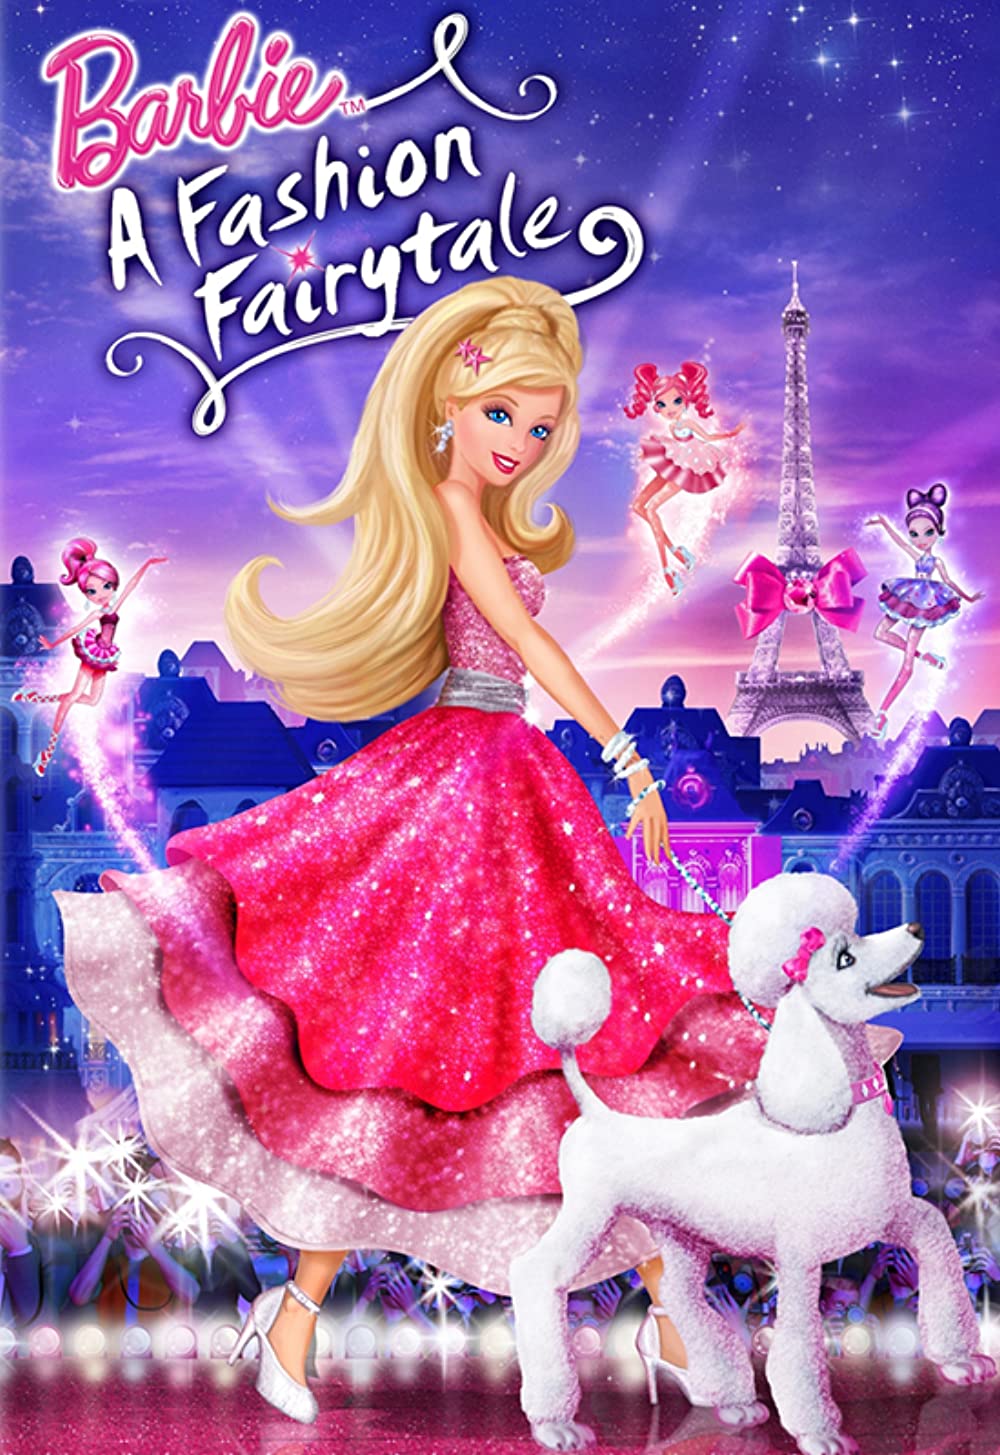 ดูหนังออนไลน์HD Barbie A Fashion Fairytale (2010) บาร์บี้ เทพธิดาแห่งแฟชั่น หนังเต็มเรื่อง หนังมาสเตอร์ ดูหนังHD ดูหนังออนไลน์ ดูหนังใหม่